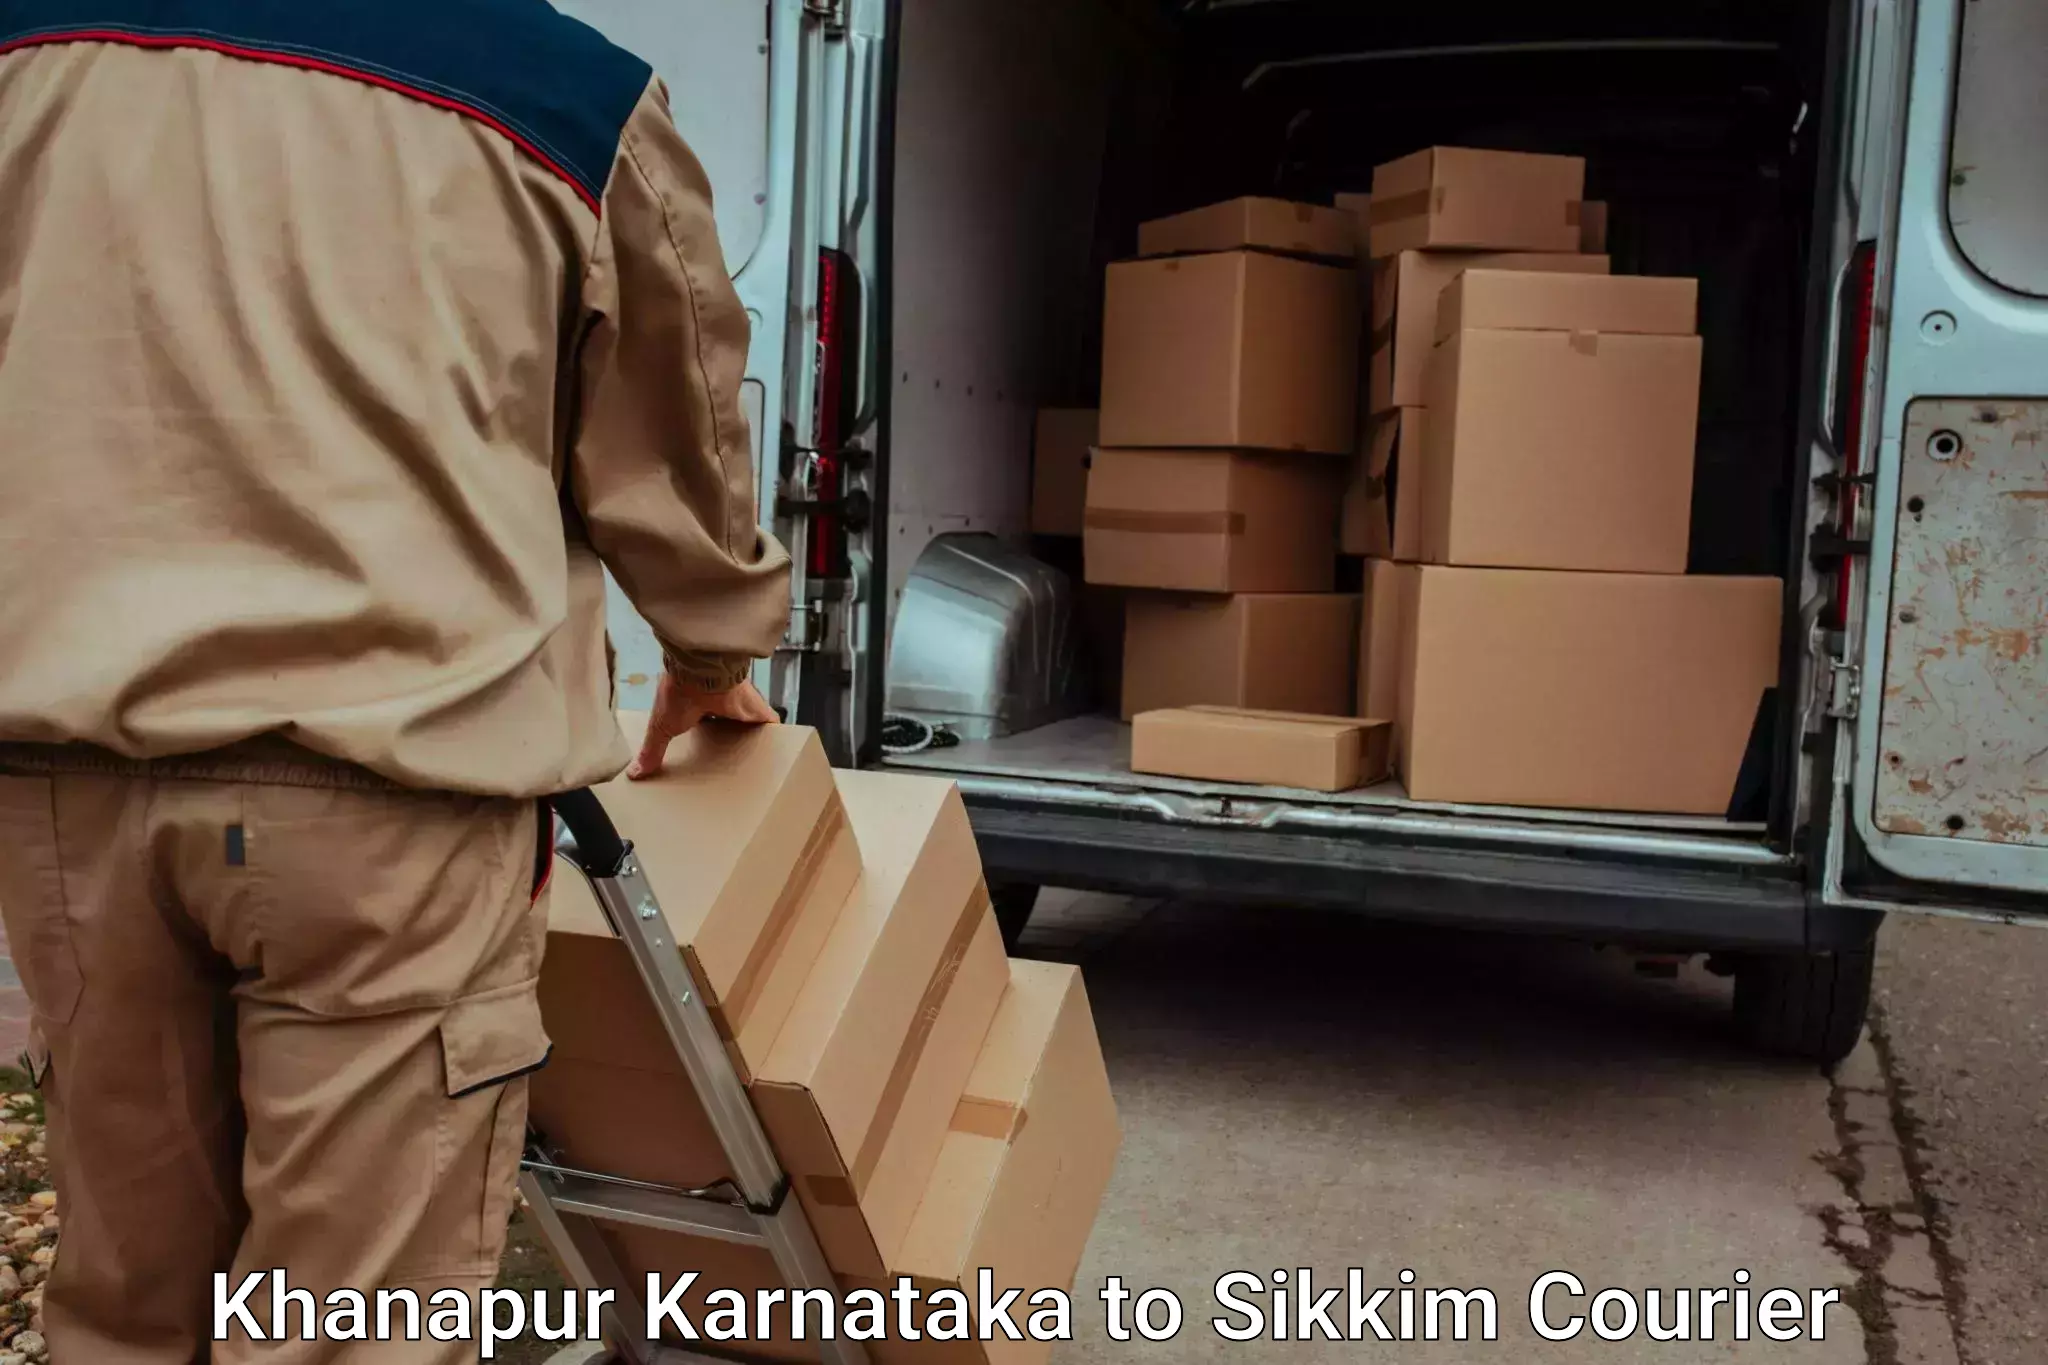 Luggage shipment tracking Khanapur Karnataka to West Sikkim